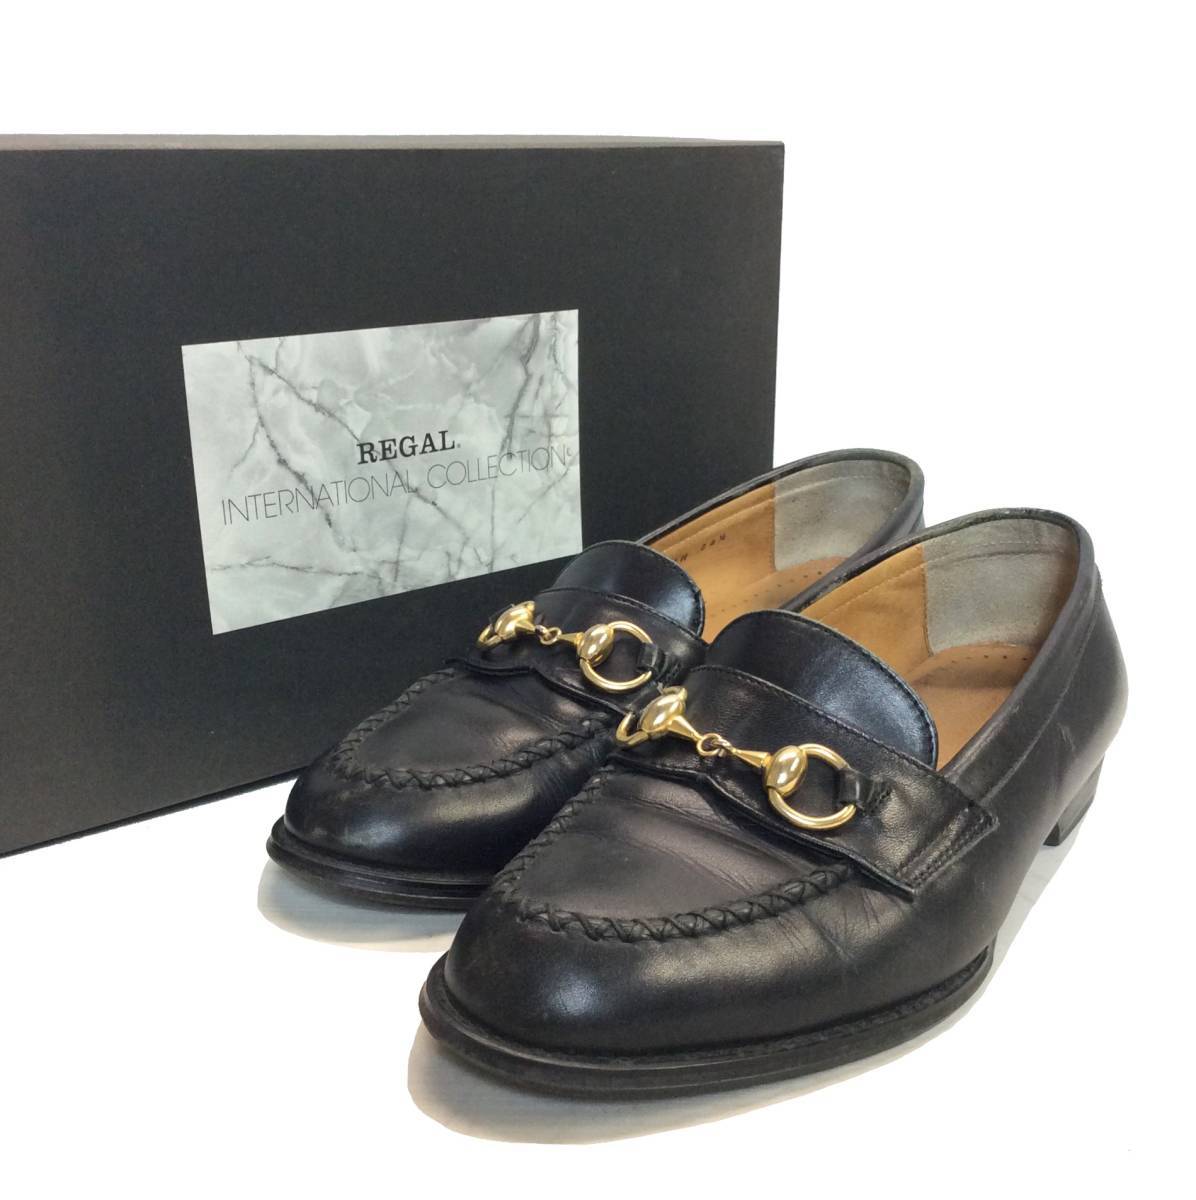 REGAL INTERNATIONAL COLLECTION リーガル インターナショナル コレクション ビットローファー ドレスシューズ 革靴 ブラック 24.5cm